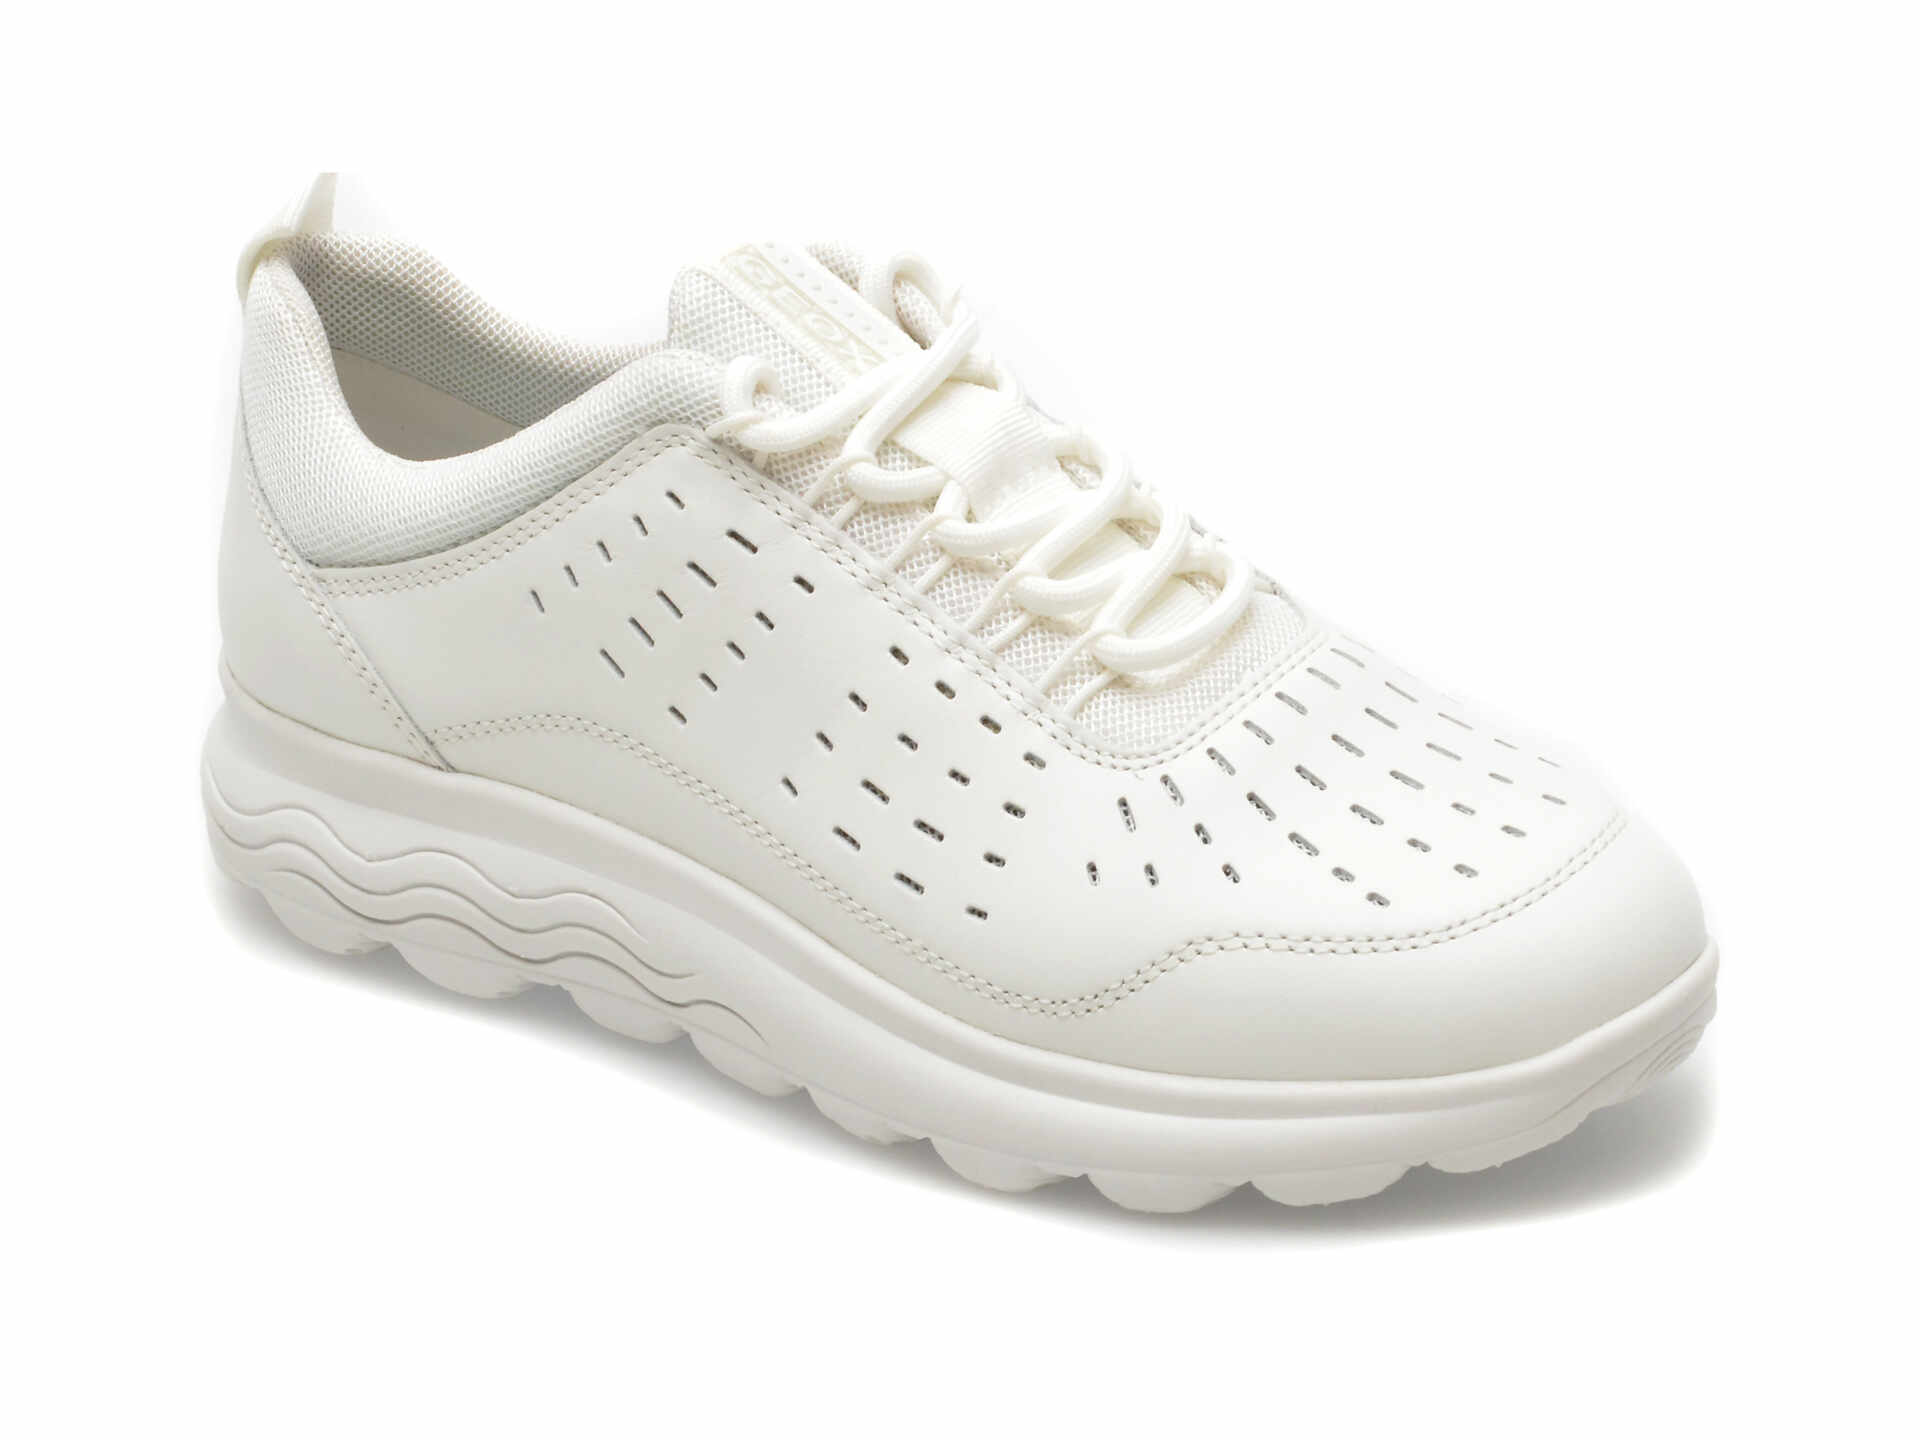 Pantofi GEOX albi, D45NUD, din piele naturala